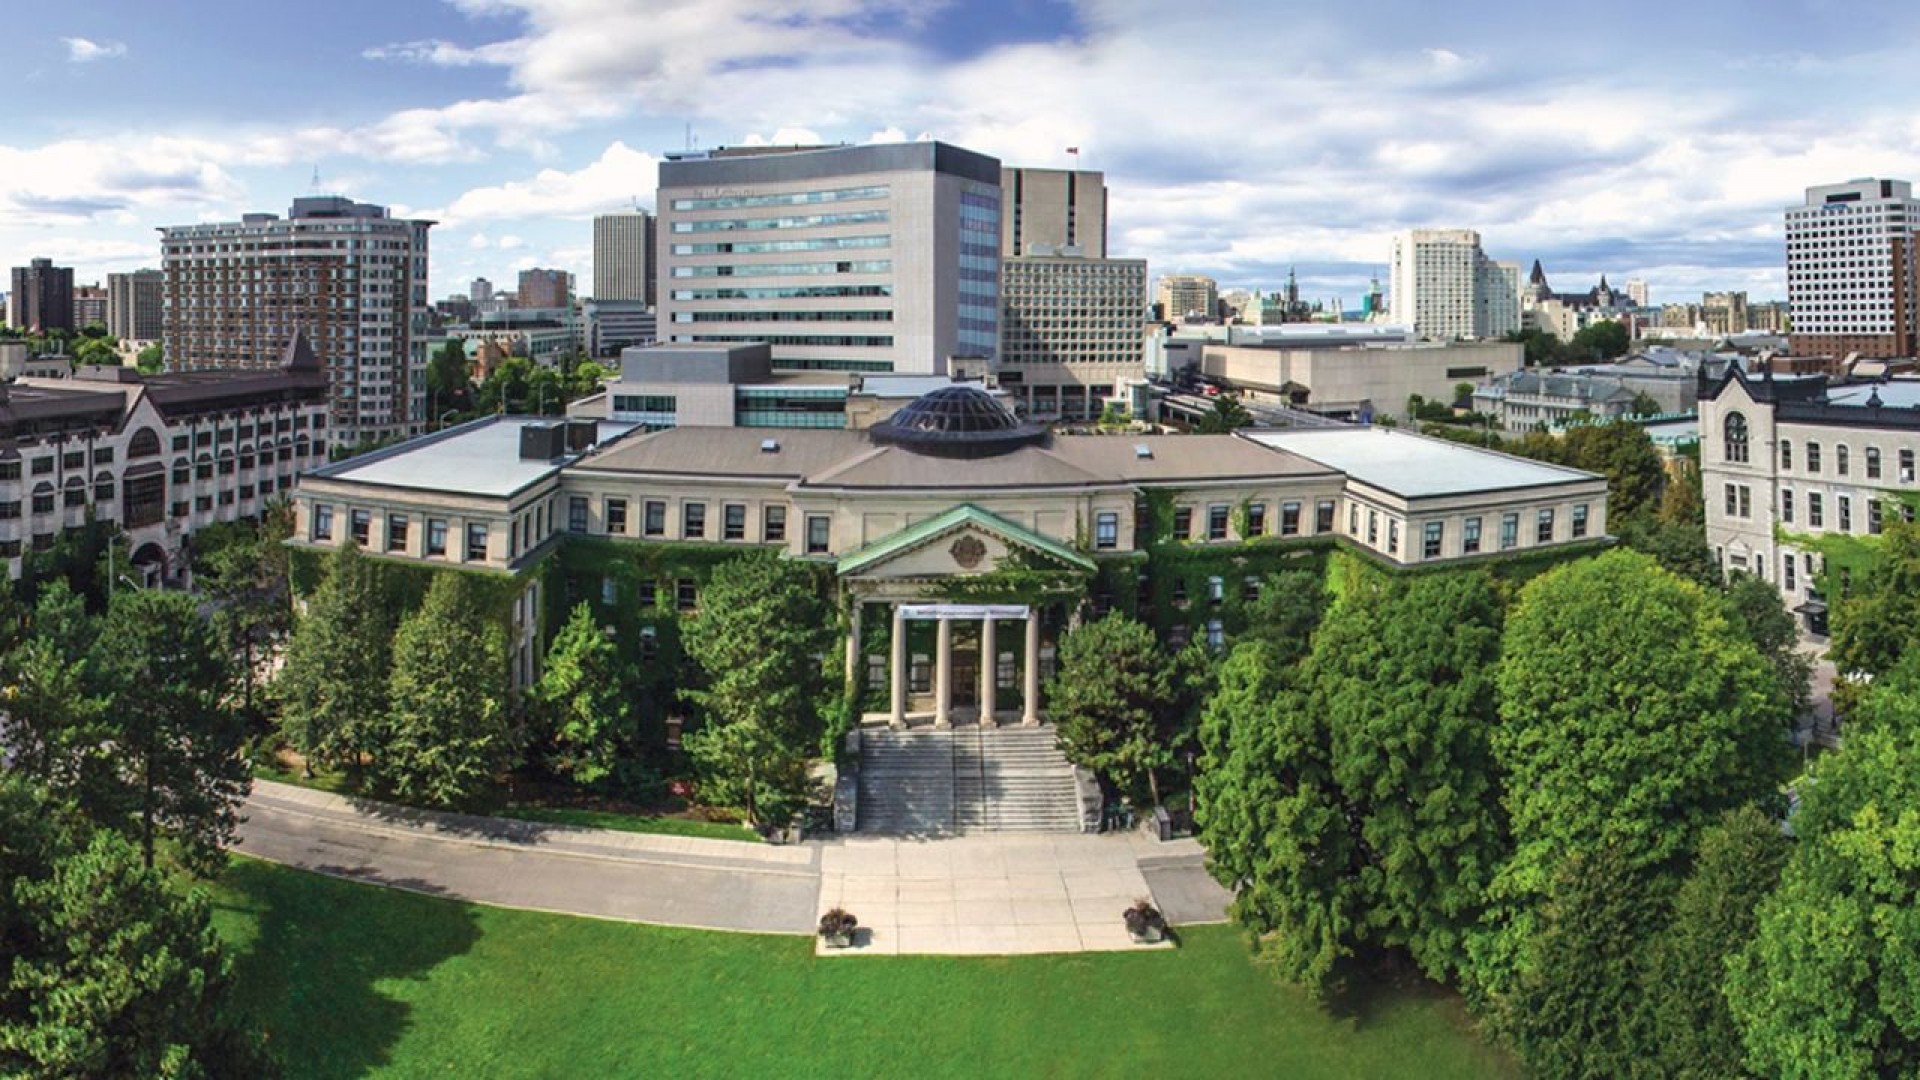 Đại học Ottawa: Điểm đến lý tưởng khi đi du học đại học ở Canada?